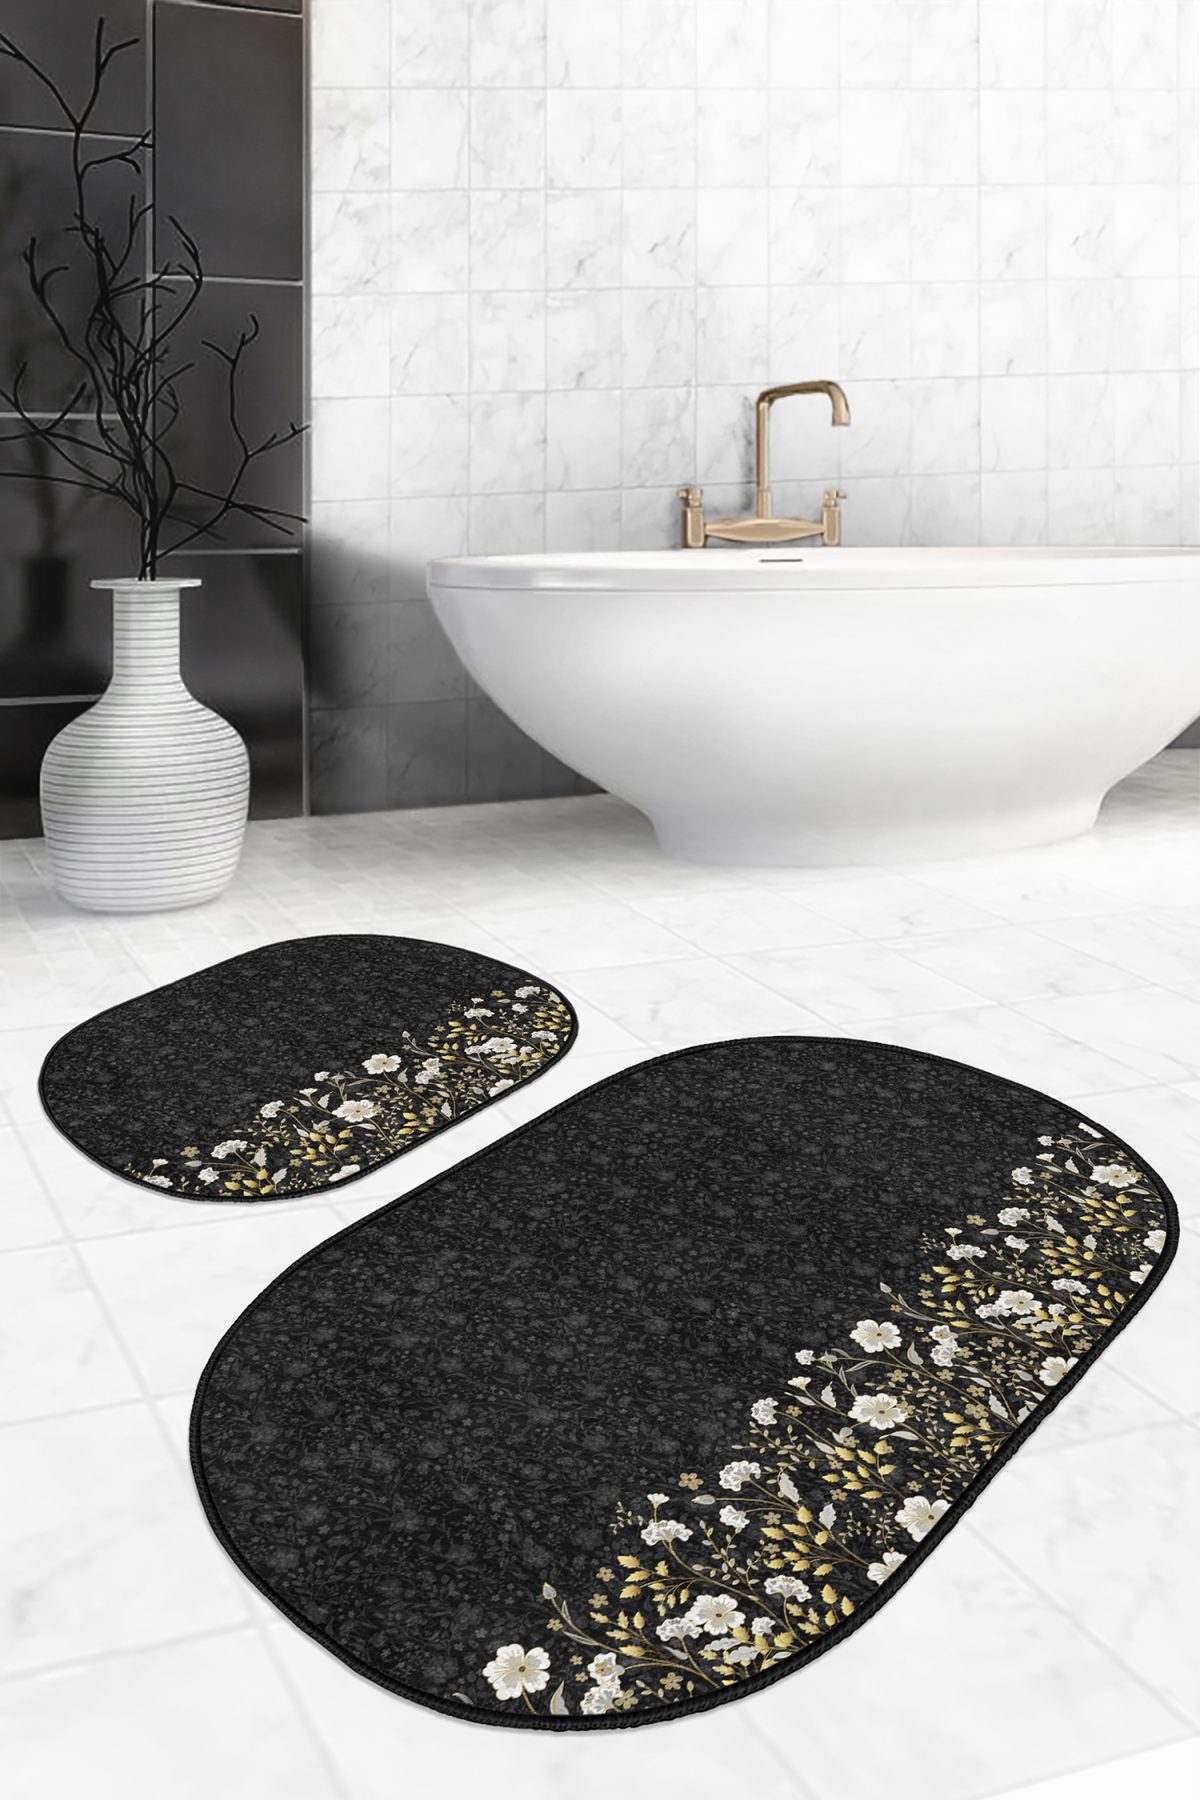 Siyah Zemin Gold Detaylı Çiçekler Dijital Baskılı 2'li Oval Kaymaz Tabanlı Banyo & Mutfak Paspas Takımı Realhomes